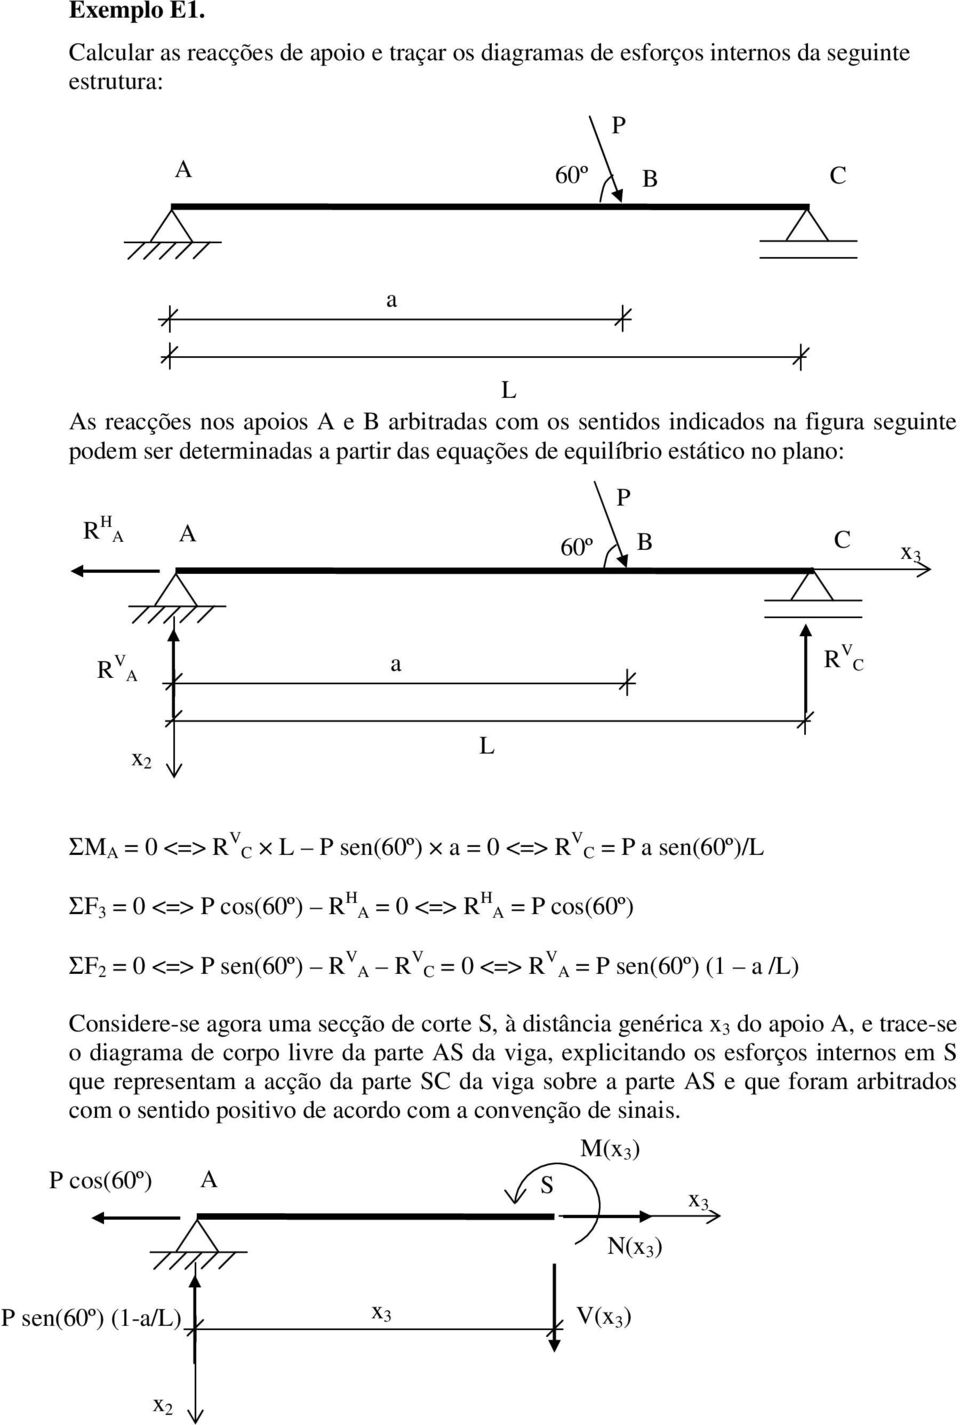 determinadas a partir das equações de equilíbrio estático no plano: R H 60º P R V a R V ΣM = 0 <=> R V P sen(60º) a = 0 <=> R V = P a sen(60º)/ ΣF 3 = 0 <=> P cos(60º) R H = 0 <=> R H = P cos(60º) ΣF